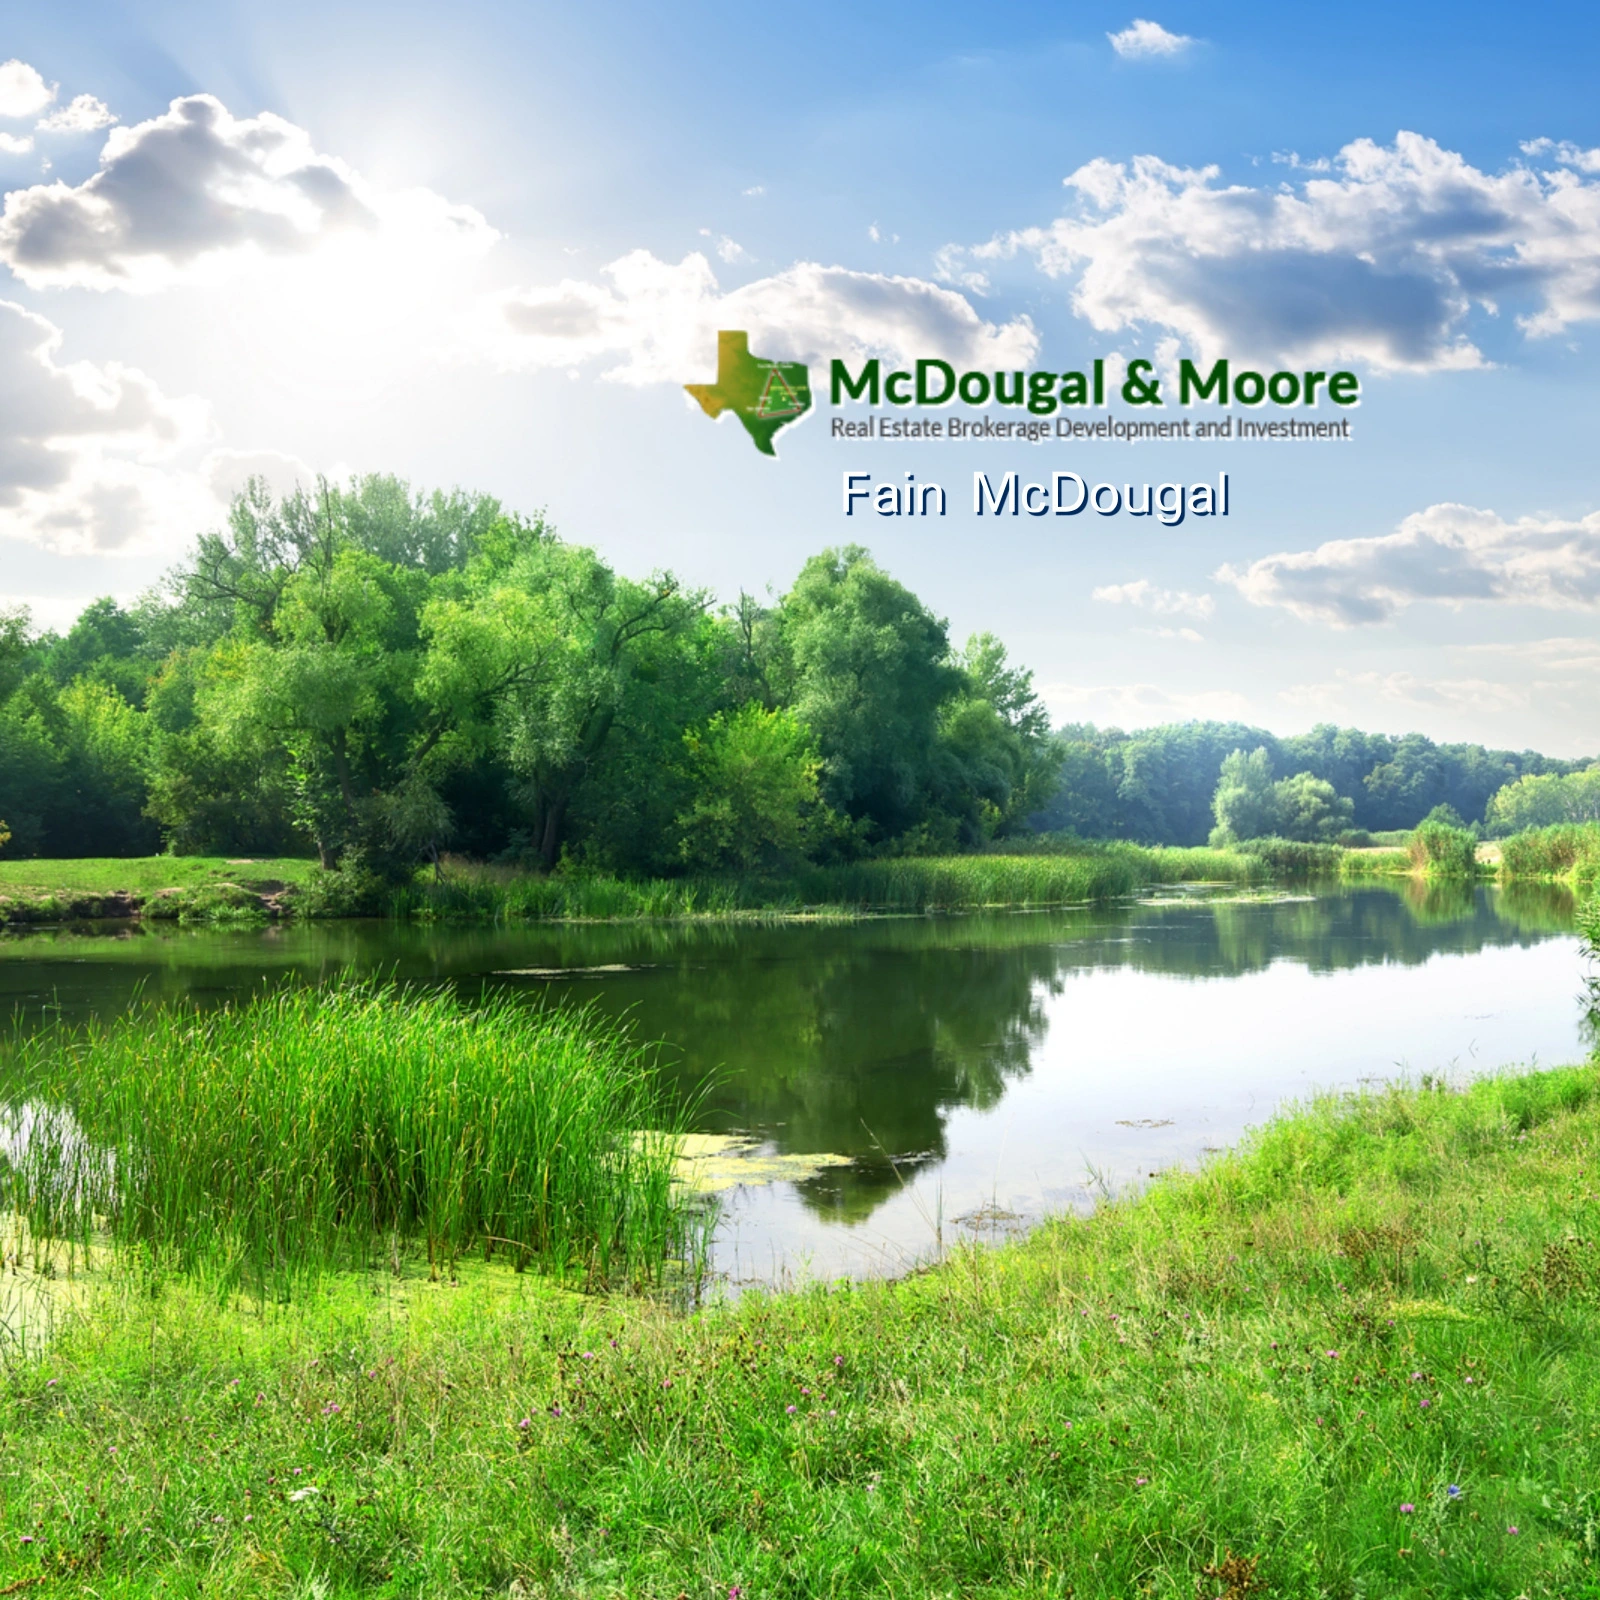 Fain-McDougal-McDougal-Moore_Mobile_ET